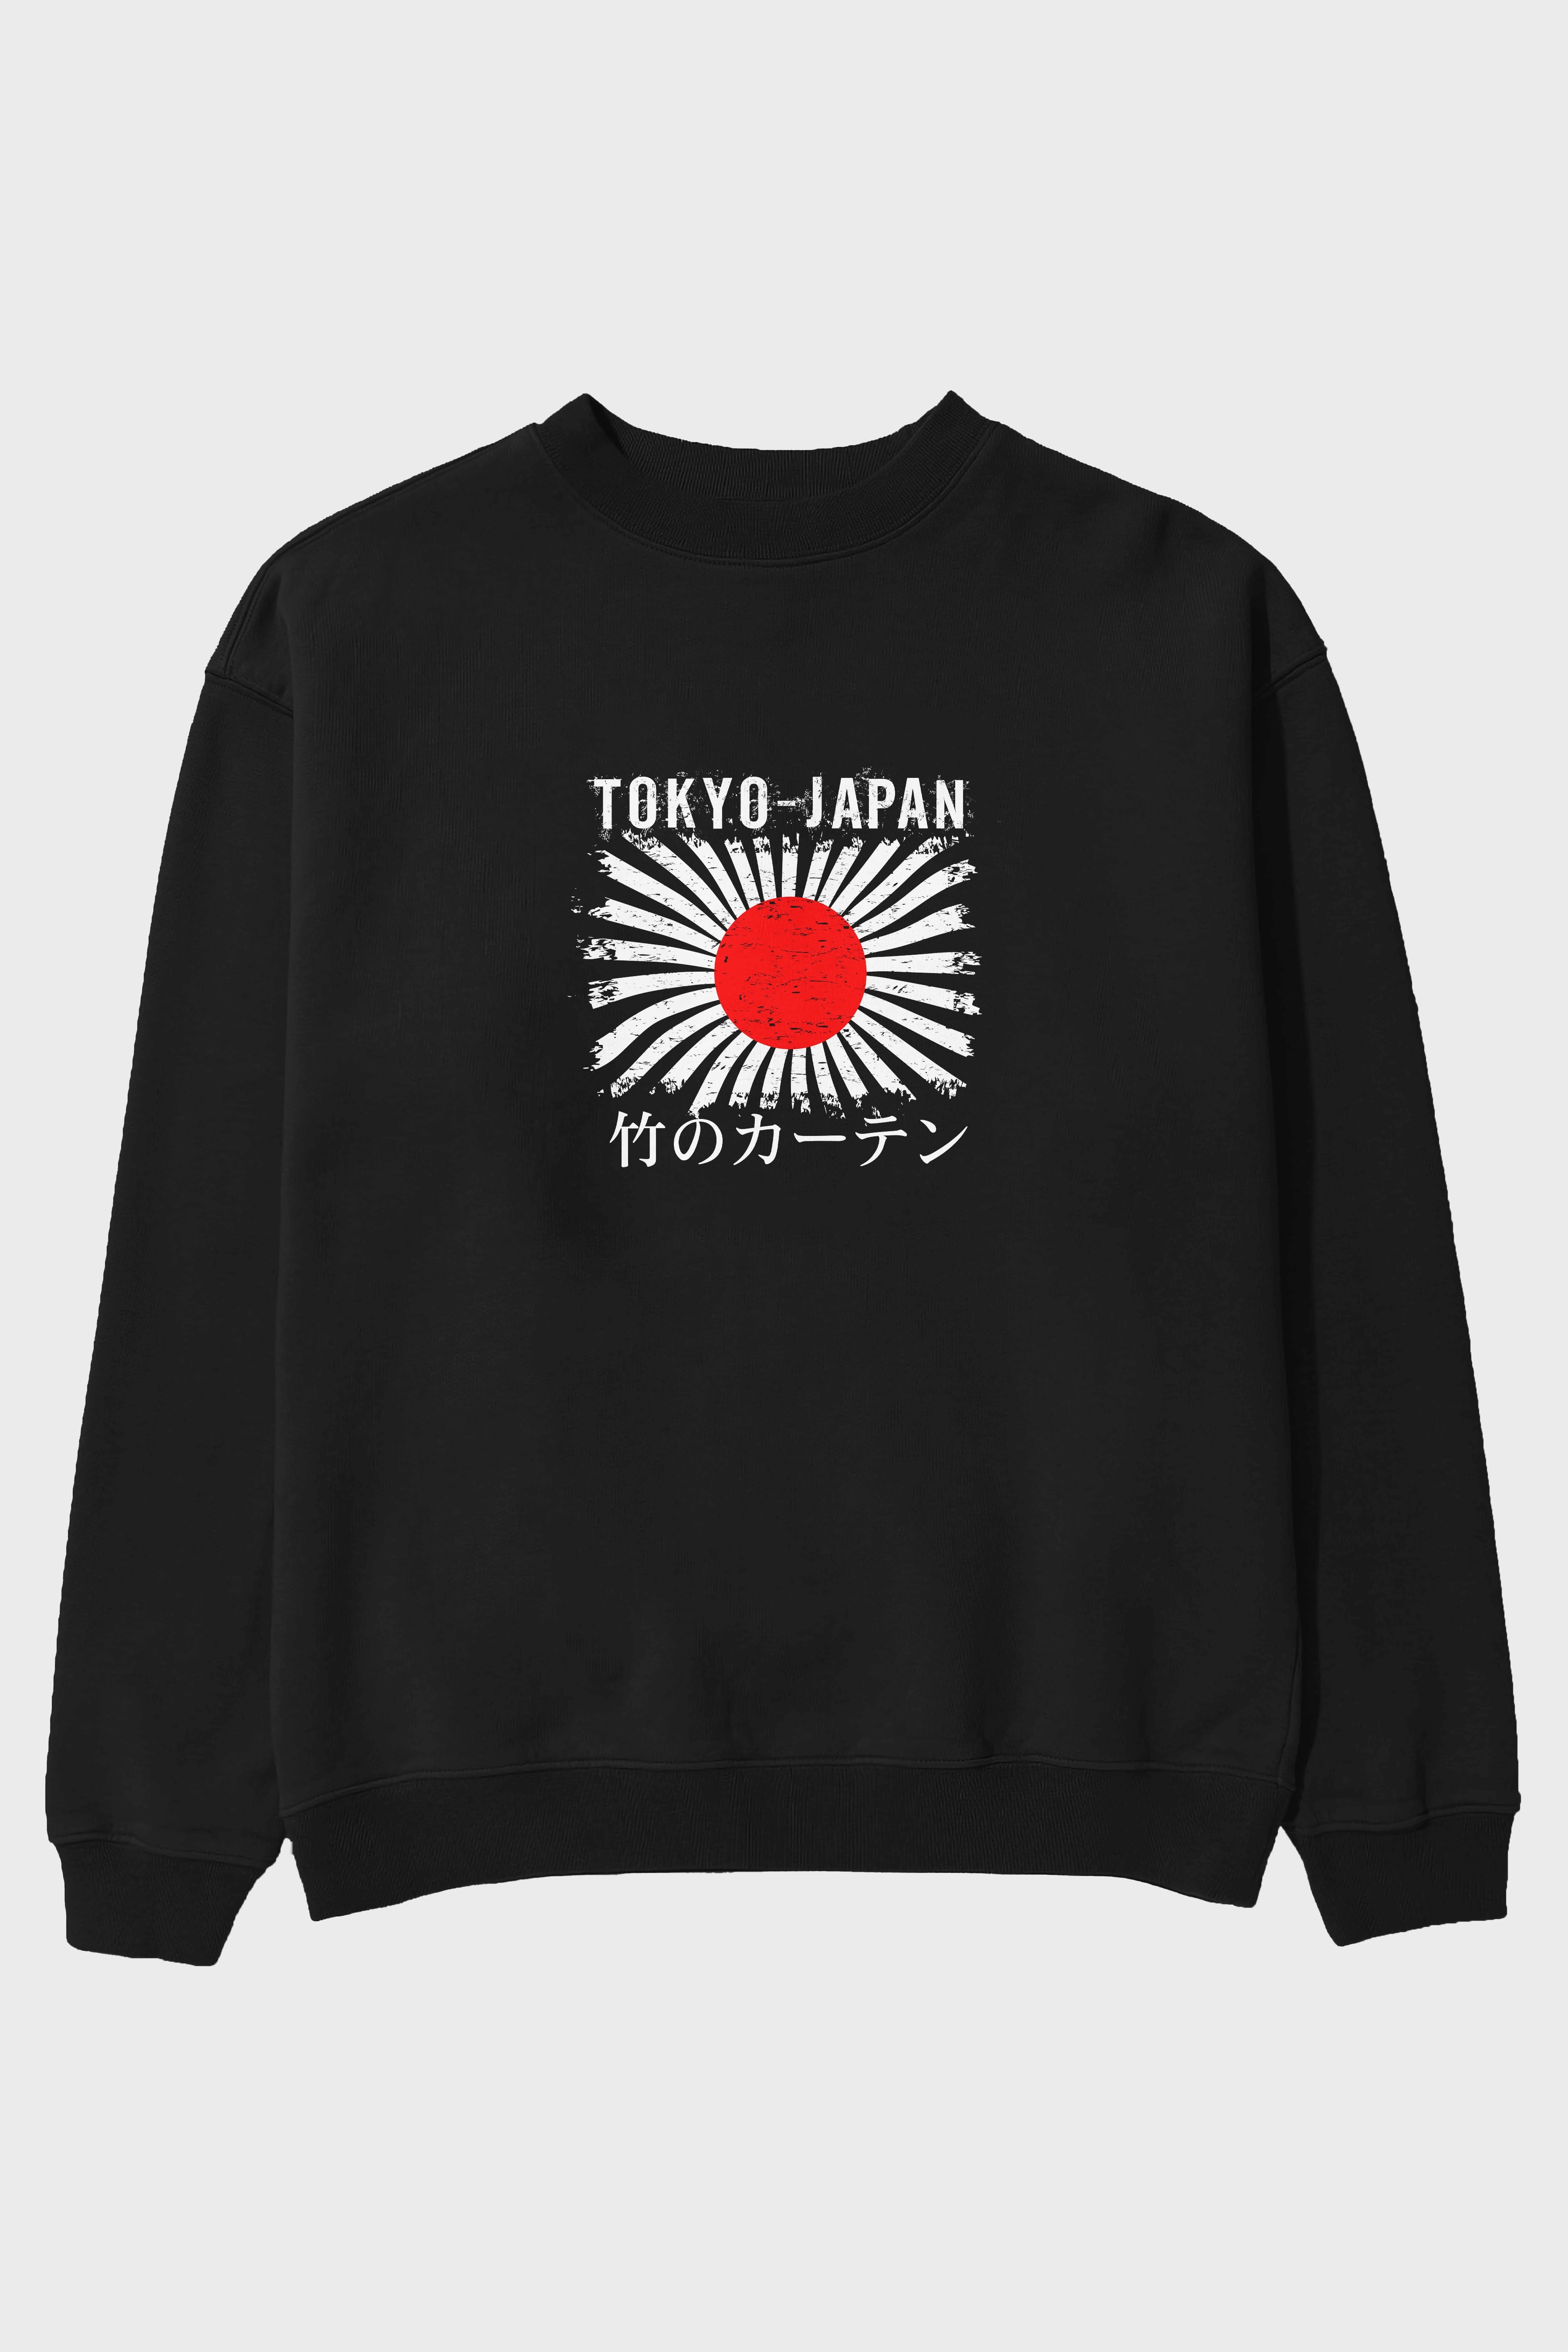 Tokyo Japan Ön Baskılı Oversize Sweatshirt Erkek Kadın Unisex